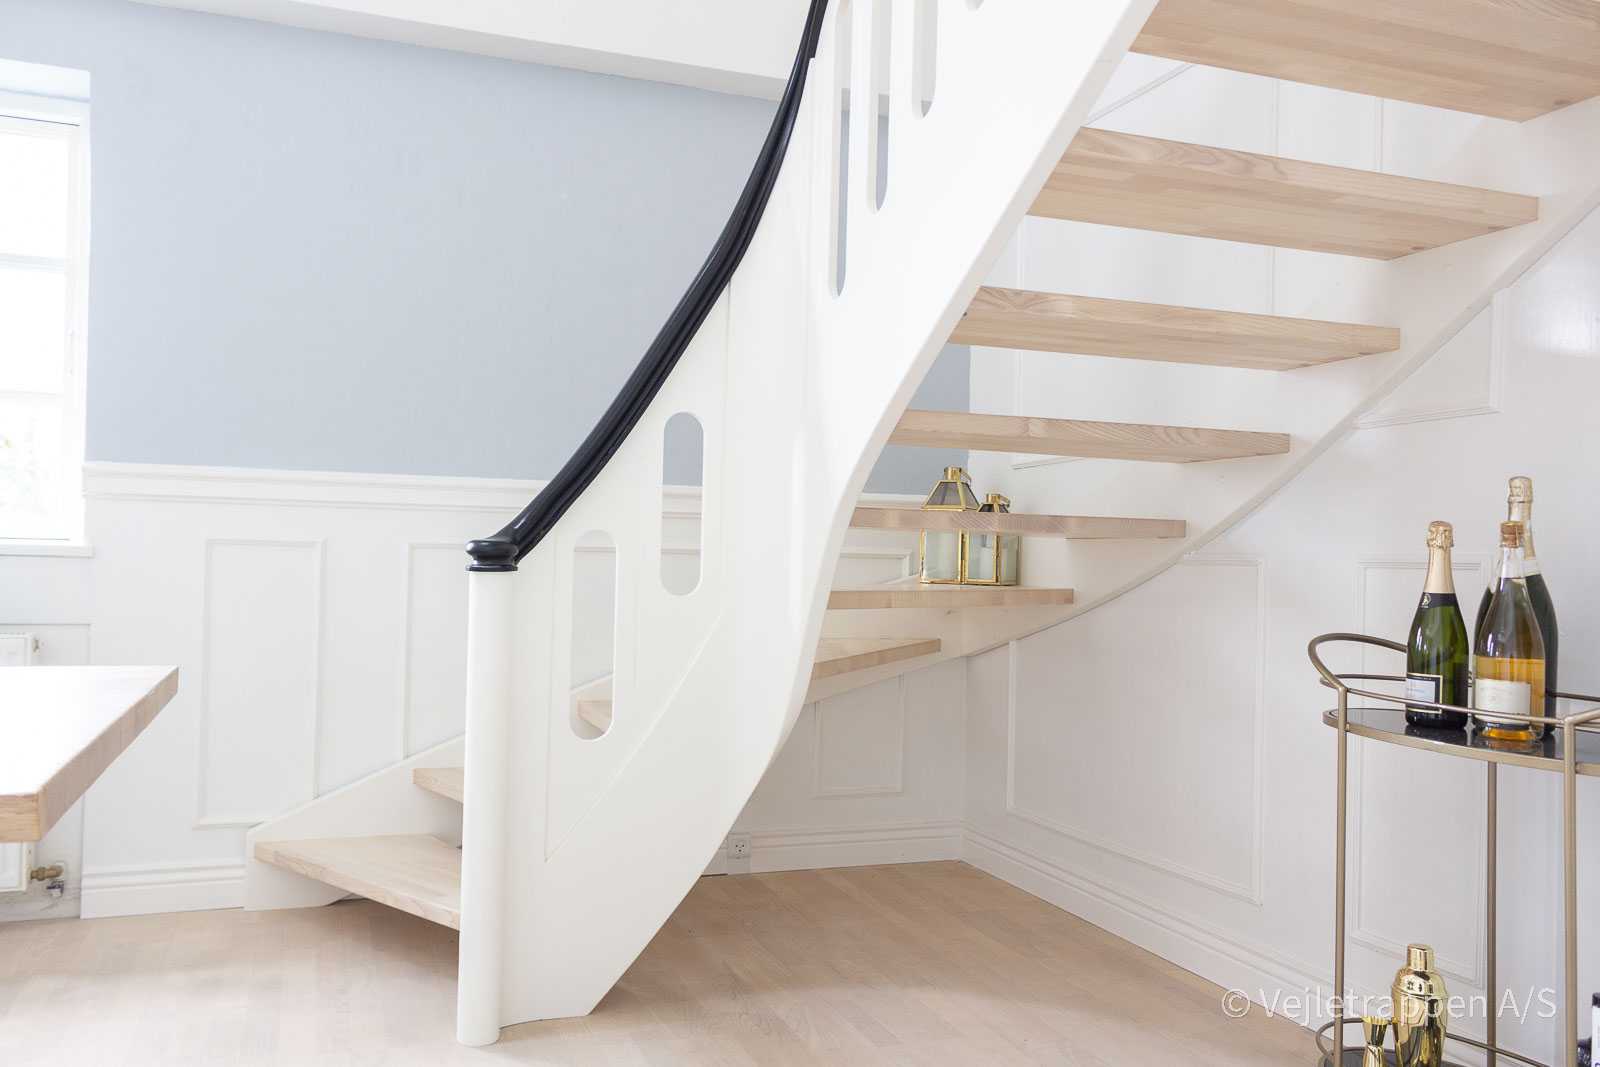 Hvid trappe fra Vejletrappen. Kvartsvingstrappe med trappetrin i ask, hvide balustre og sort trappegelænder.